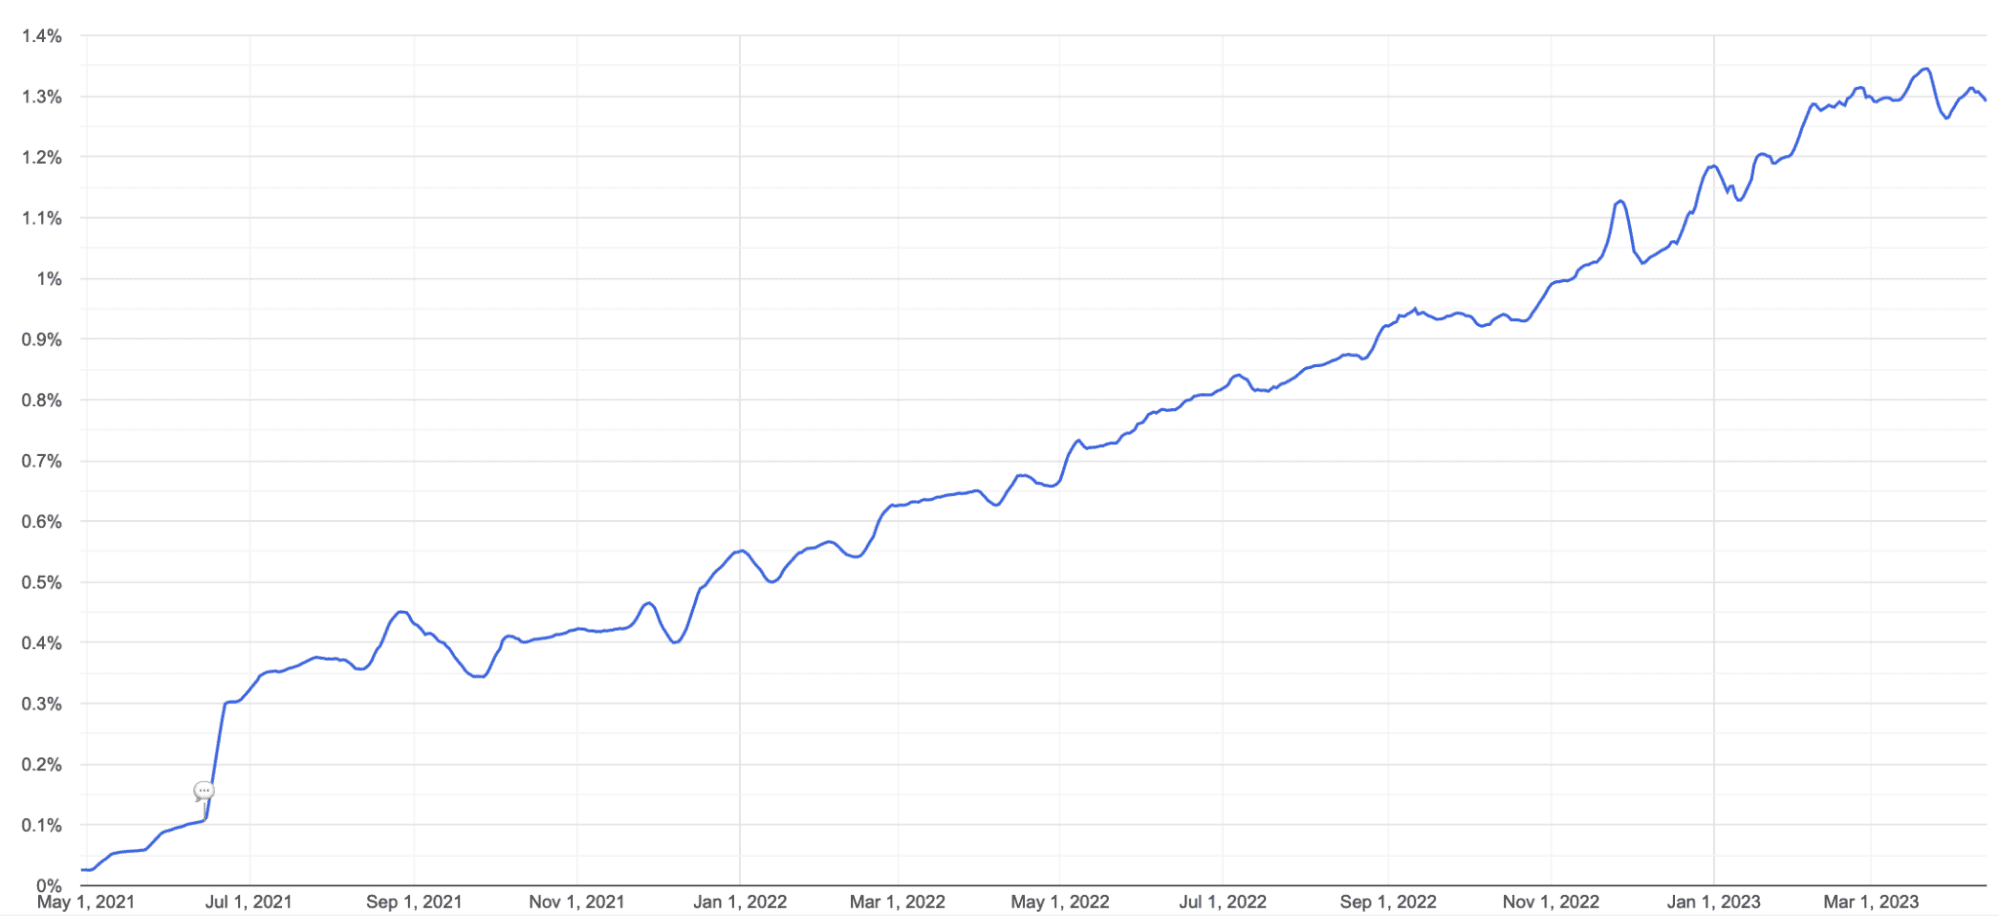 نمودار خطی استفاده از AVIF در Chrome از مه 2021 تا مارس 2023. پشتیبانی به طور پیوسته از 0٪ به کمتر از 1.4٪ افزایش یافته است.